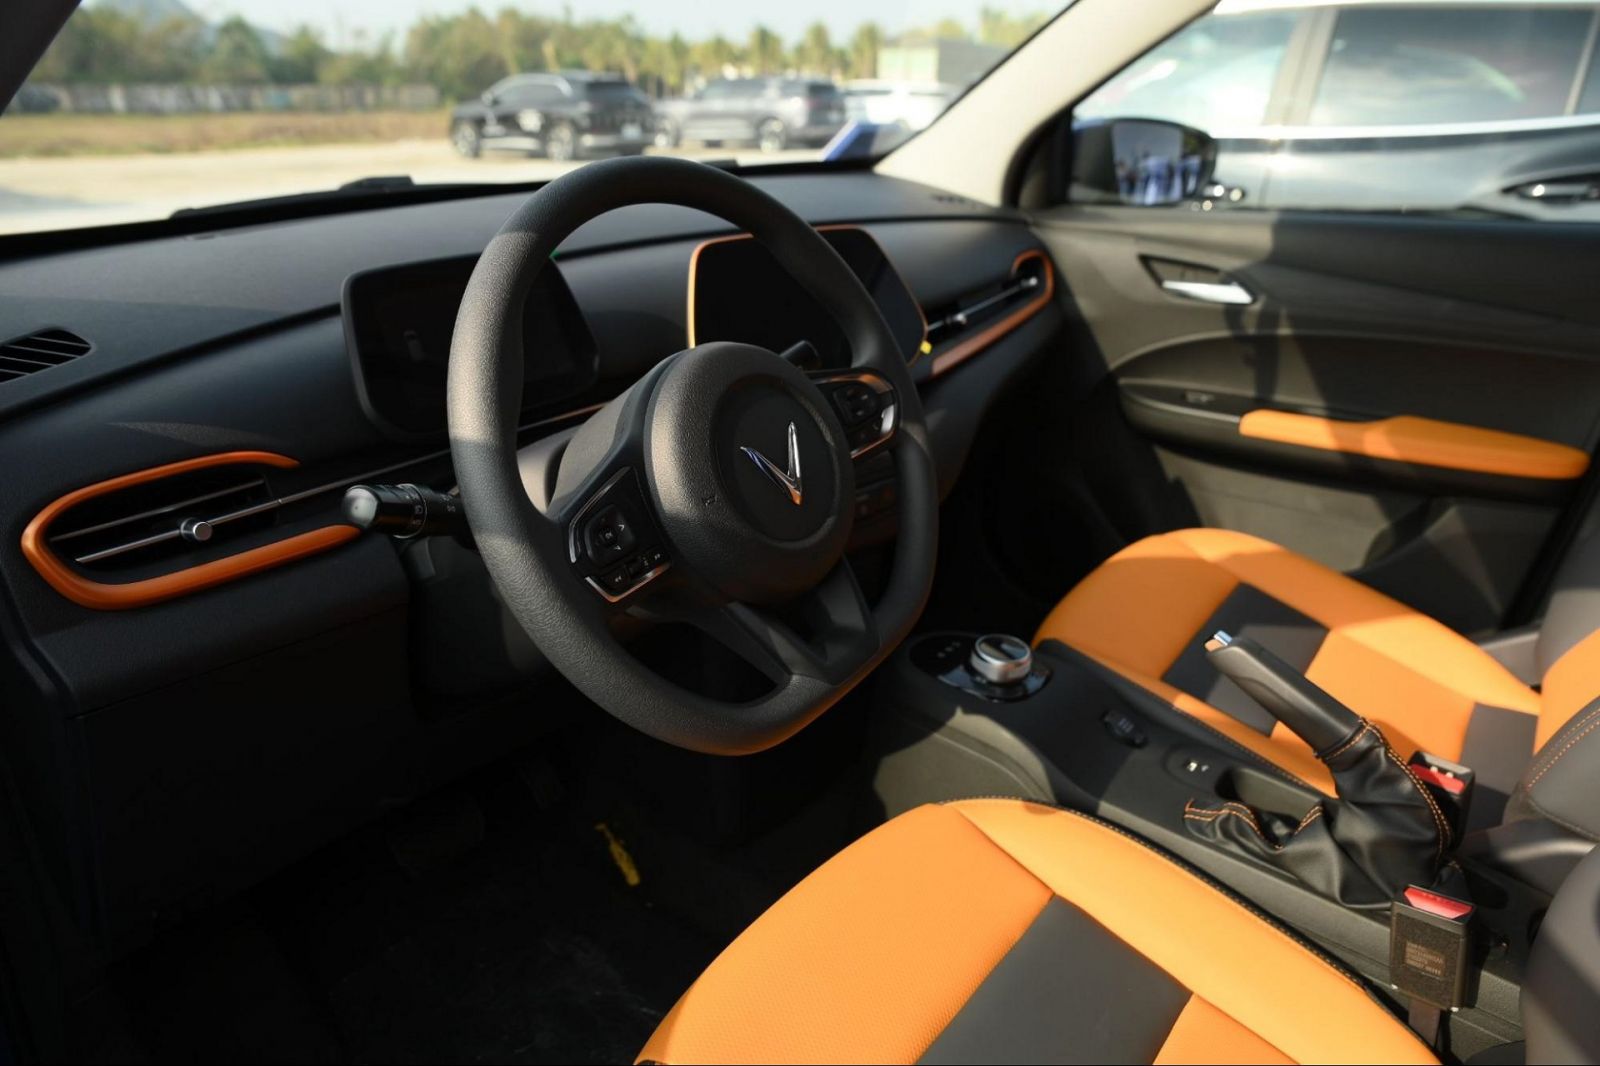 VF 5 Plus là mẫu xe thu hút sự chú ý lớn của khách tham quan vì là model mới nhất, có thiết kế nhỏ gọn bắt mắt cùng nhiều lựa chọn màu sơn ngoại thất và nội thất ấn tượng. Xe có tới 16 lựa chọn màu sơn bên ngoài và 3 màu nội thất bên trong, giúp mang đến tính cá nhân hóa cao cho chủ xe.